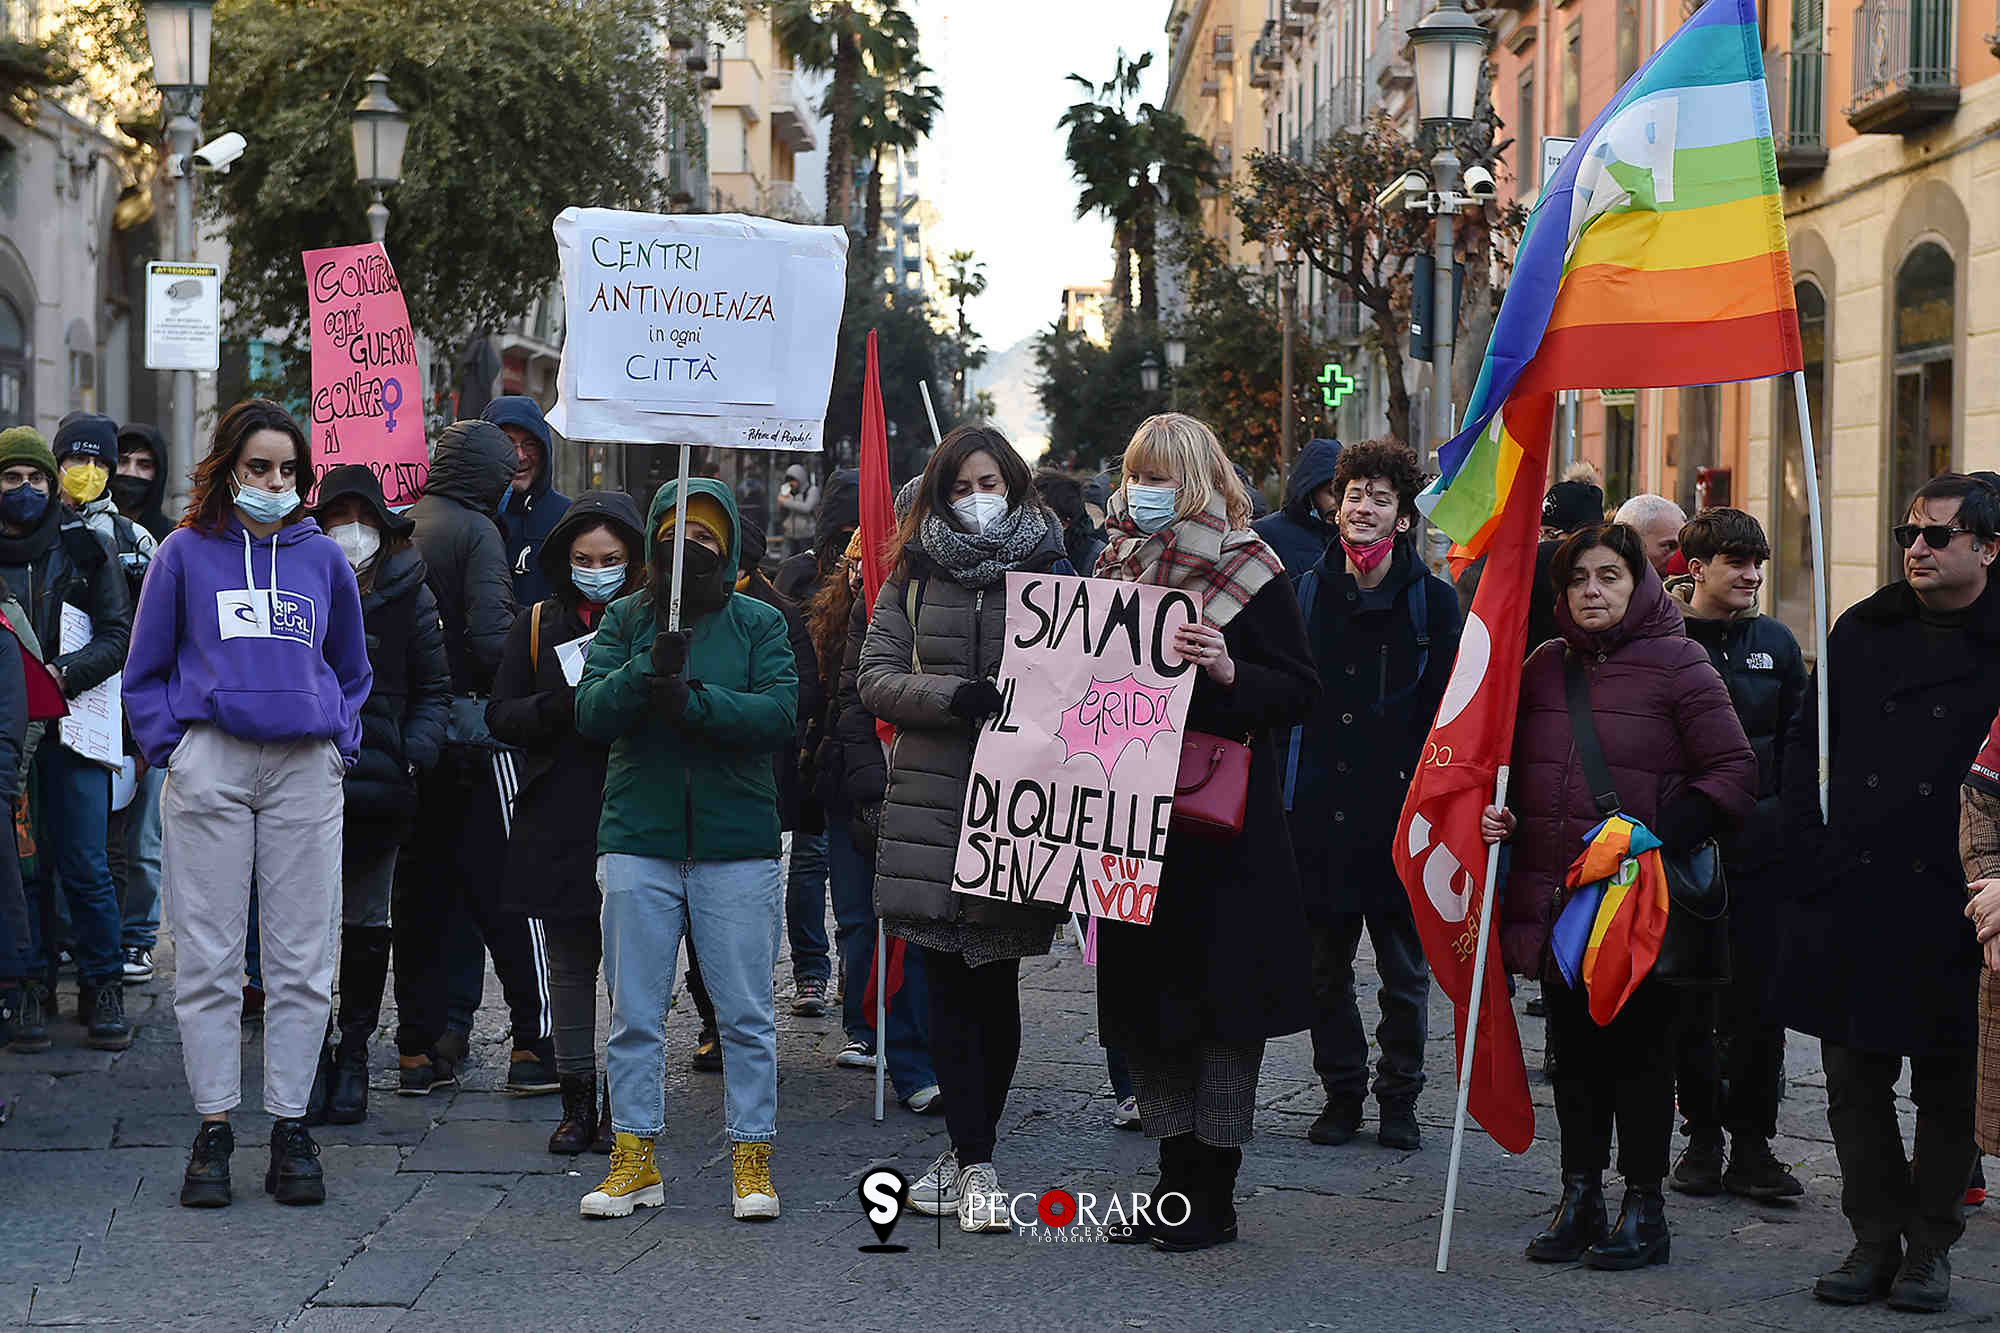 SAL - 08 03 2022 Salerno. Corteo contro la violenza sulle donne. Foto Tanopress